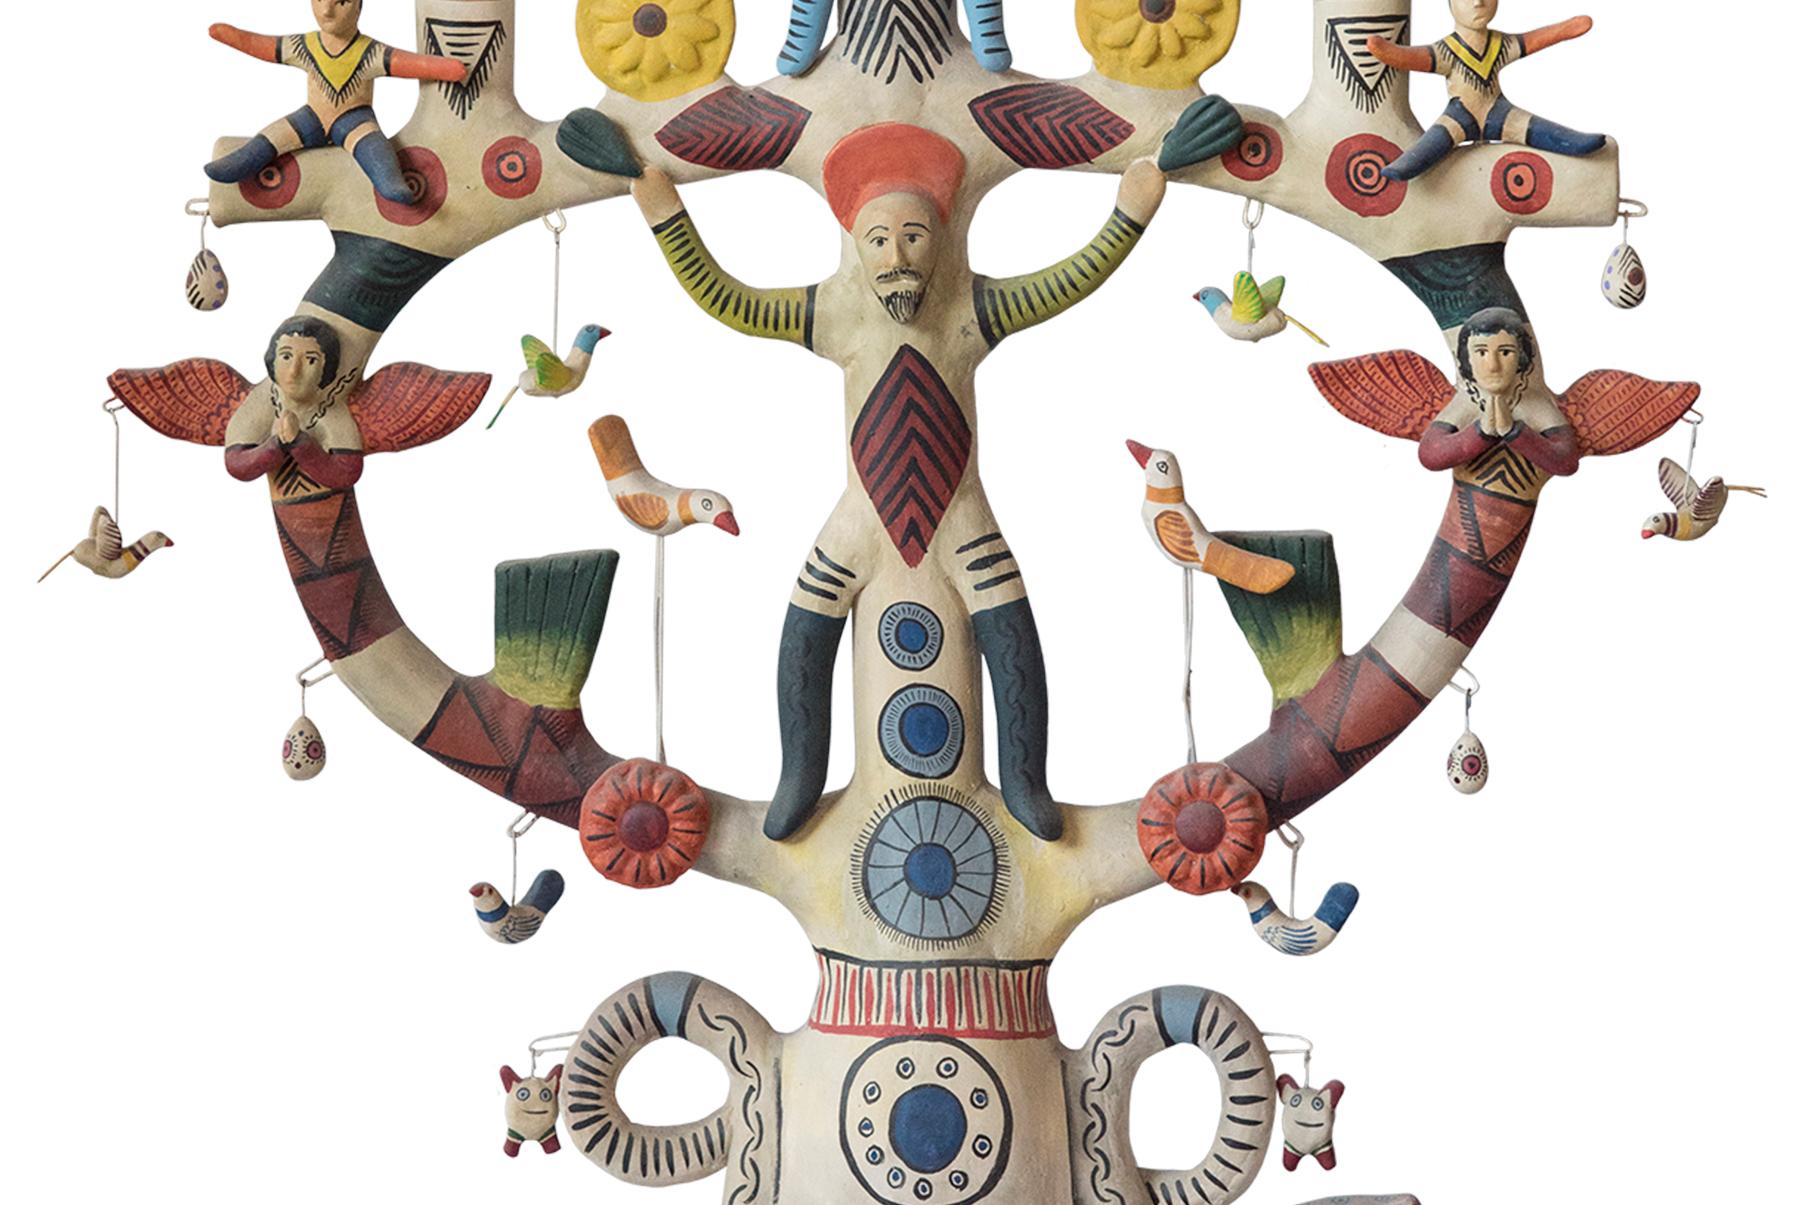 Hand-Painted Mexican Antique Style Arbol de la Vida Colorful Folk Art Candelabra Ceramic Clay